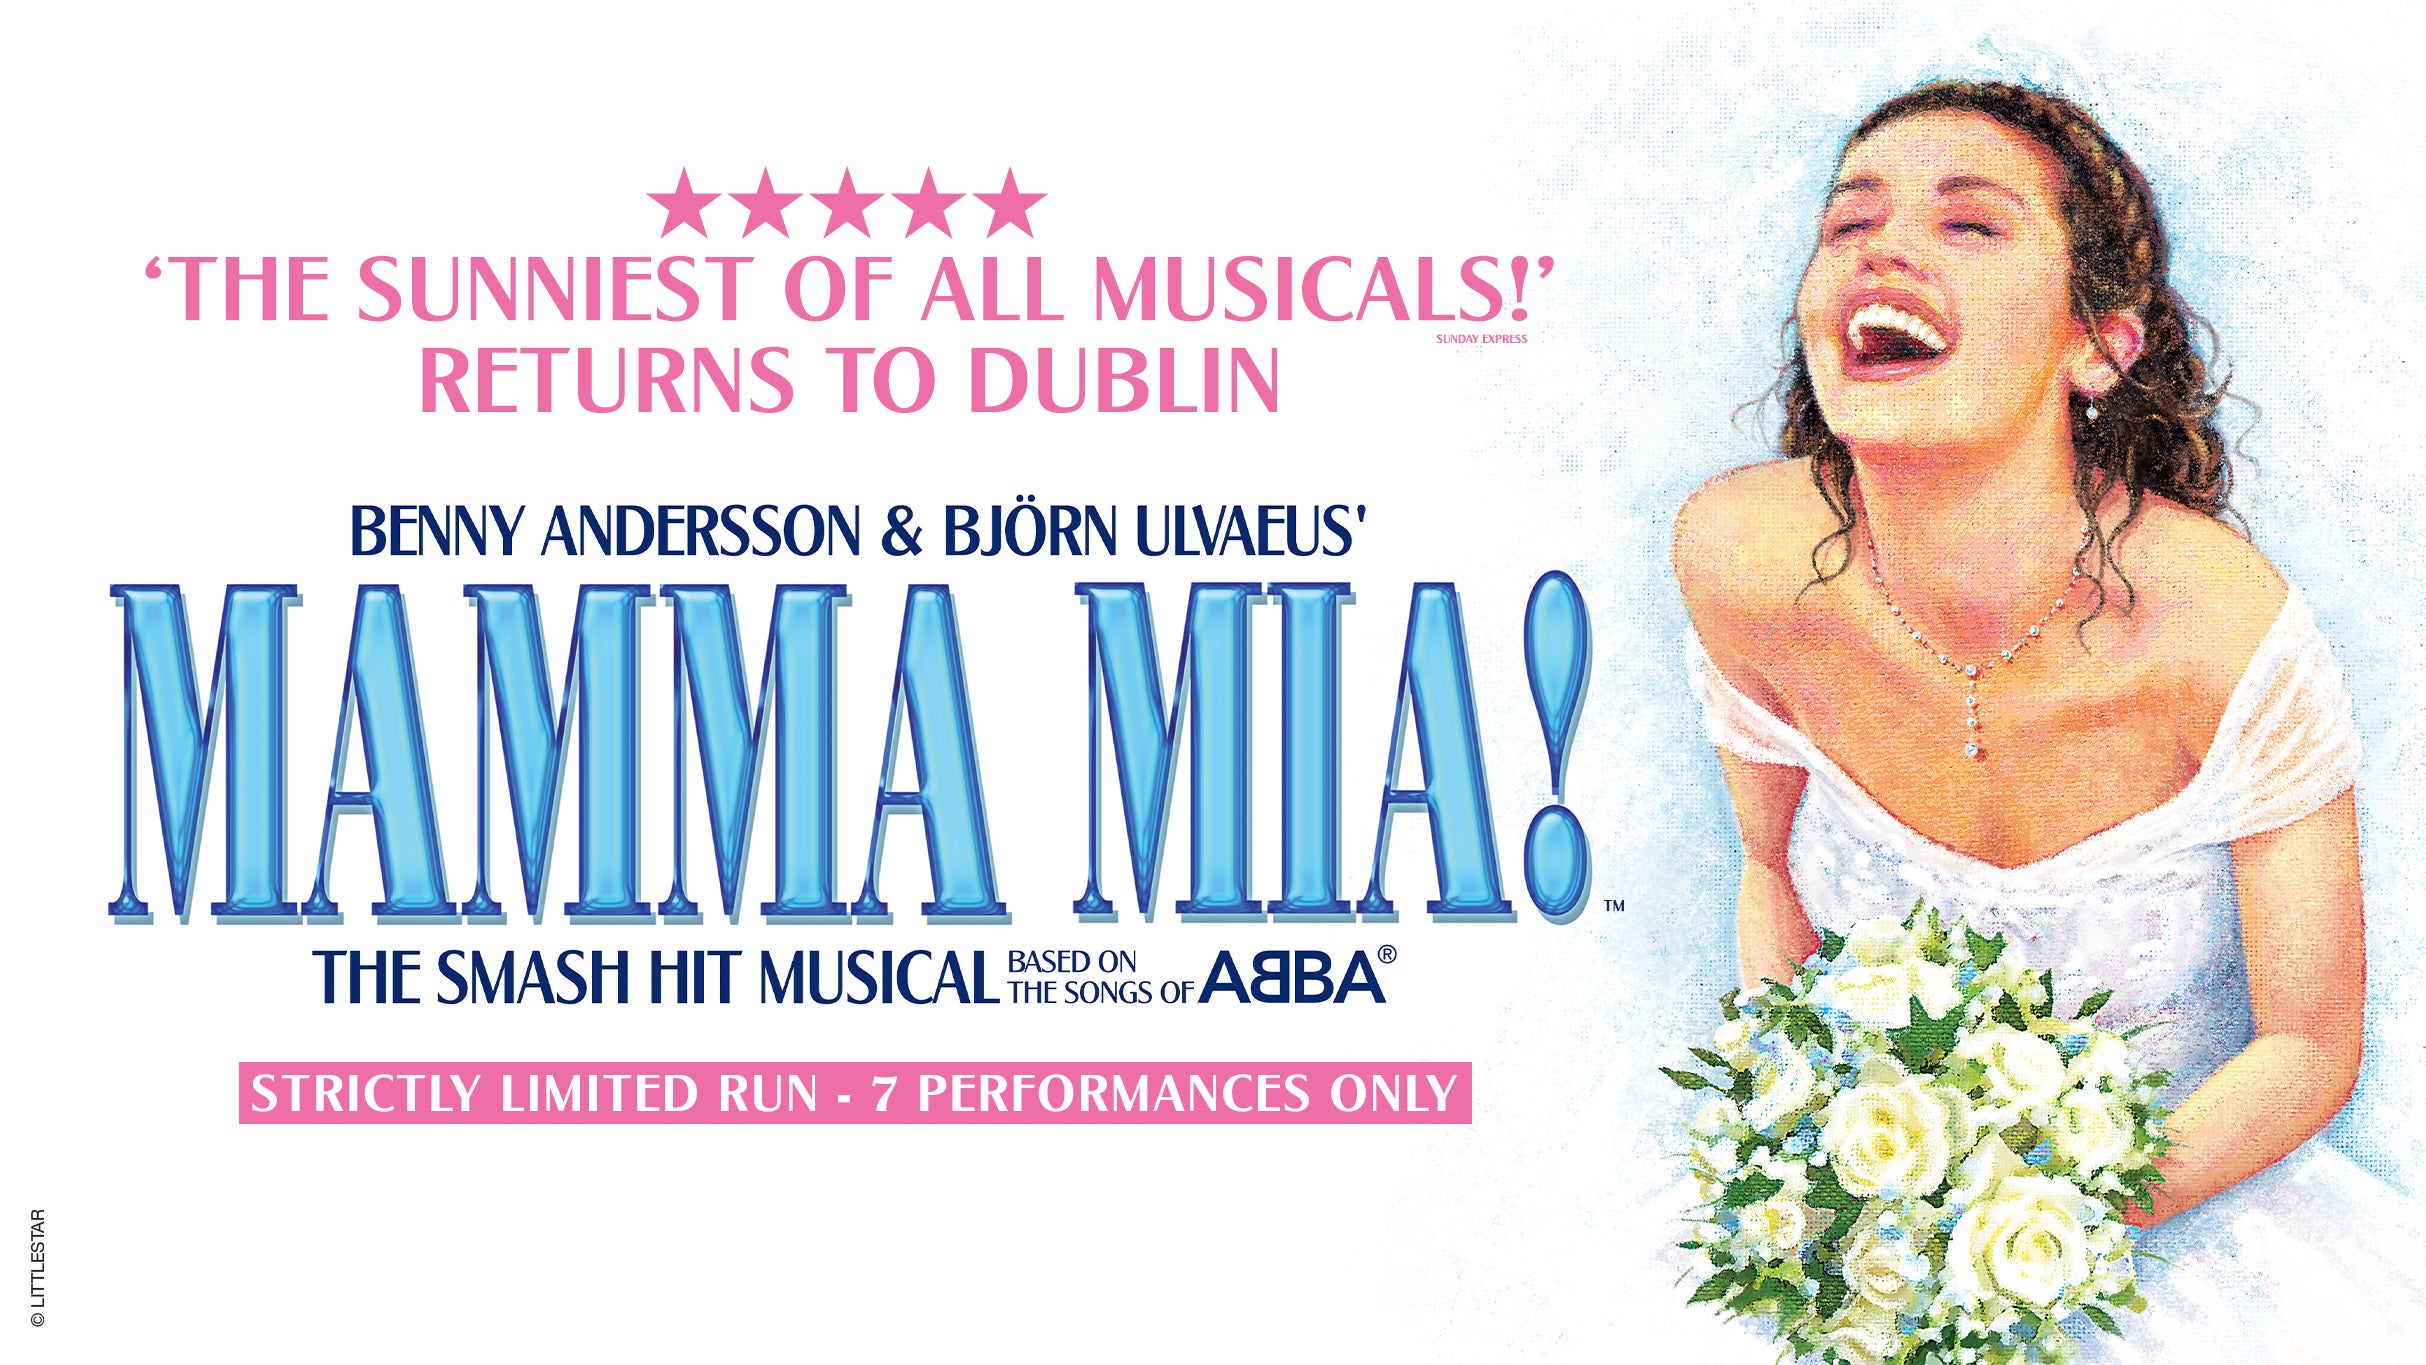 Mamma Mia! in Dublin promo photo for Mamma Mia Fan presale offer code